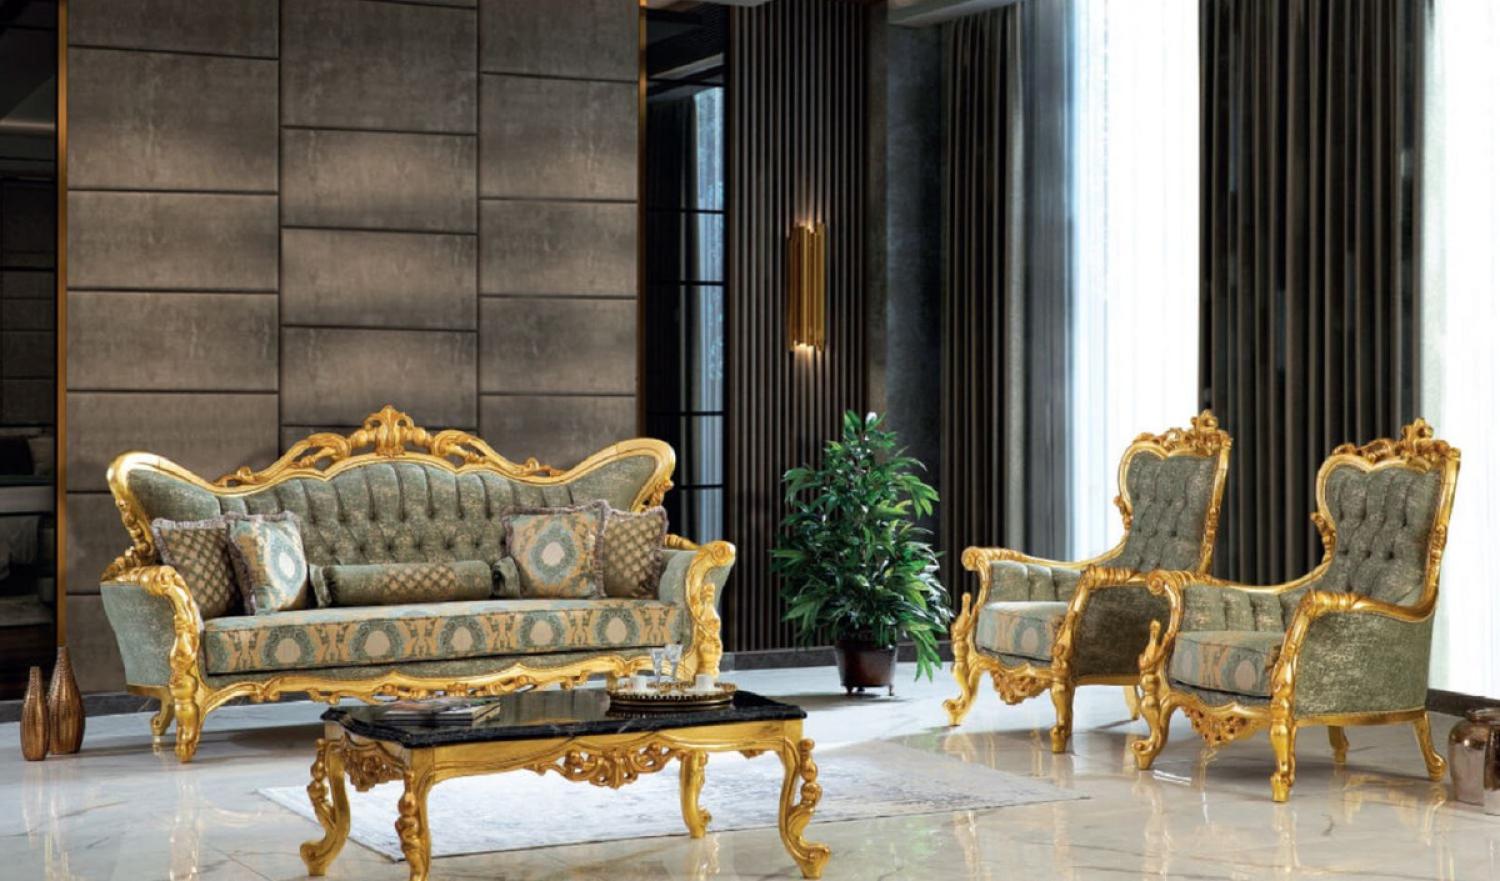 Casa Padrino Luxus Barock Wohnzimmer Set Grün / Schwarz / Gold - 2 Sofas & 2 Sessel & 1 Couchtisch - Handgefertigte Wohnzimmer Möbel im Barockstil - Edel & Prunkvoll Bild 1